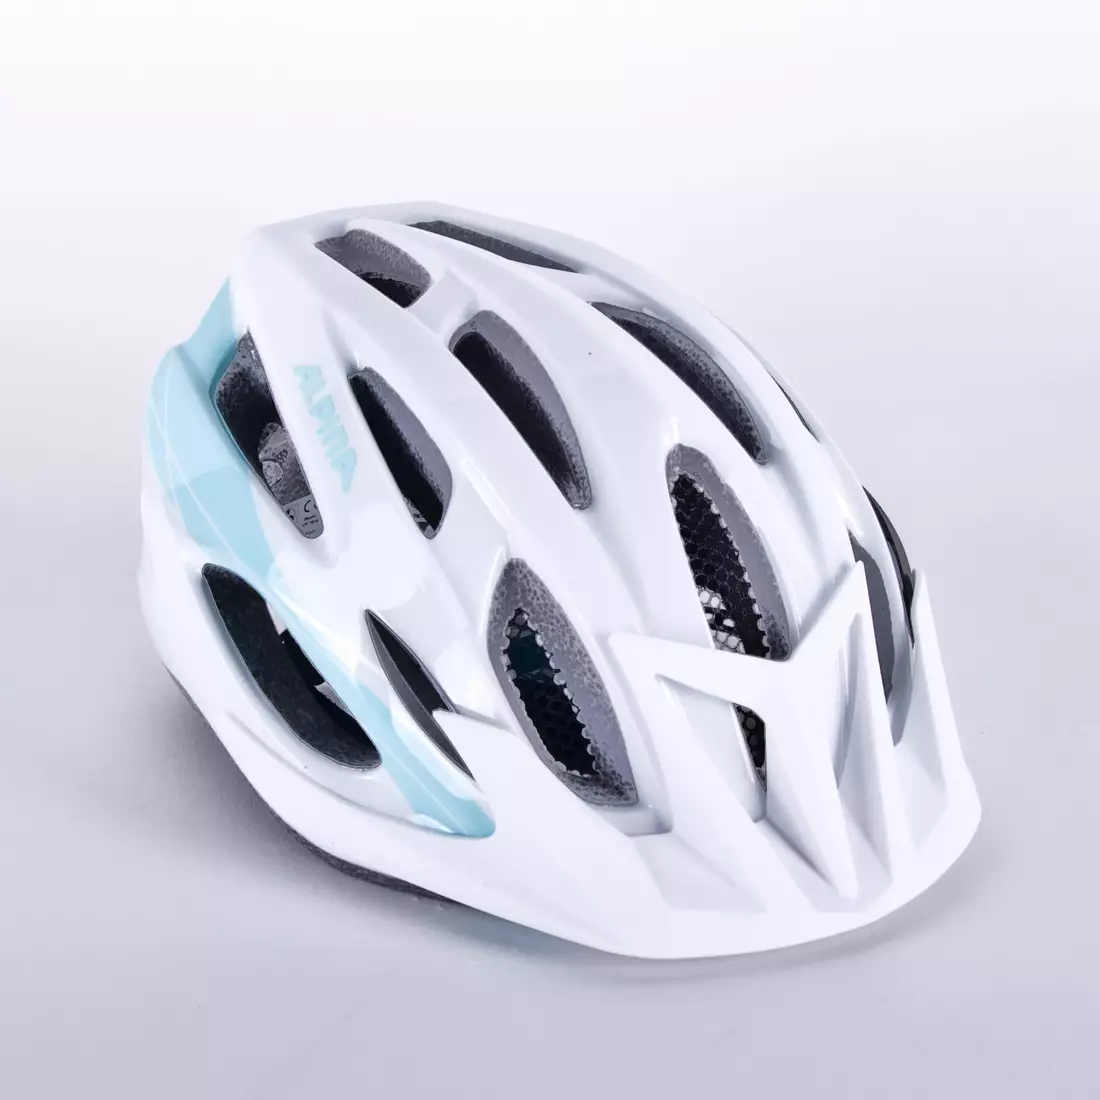 ALPINA casca de bicicleta MTB 17, alb și albastru deschis